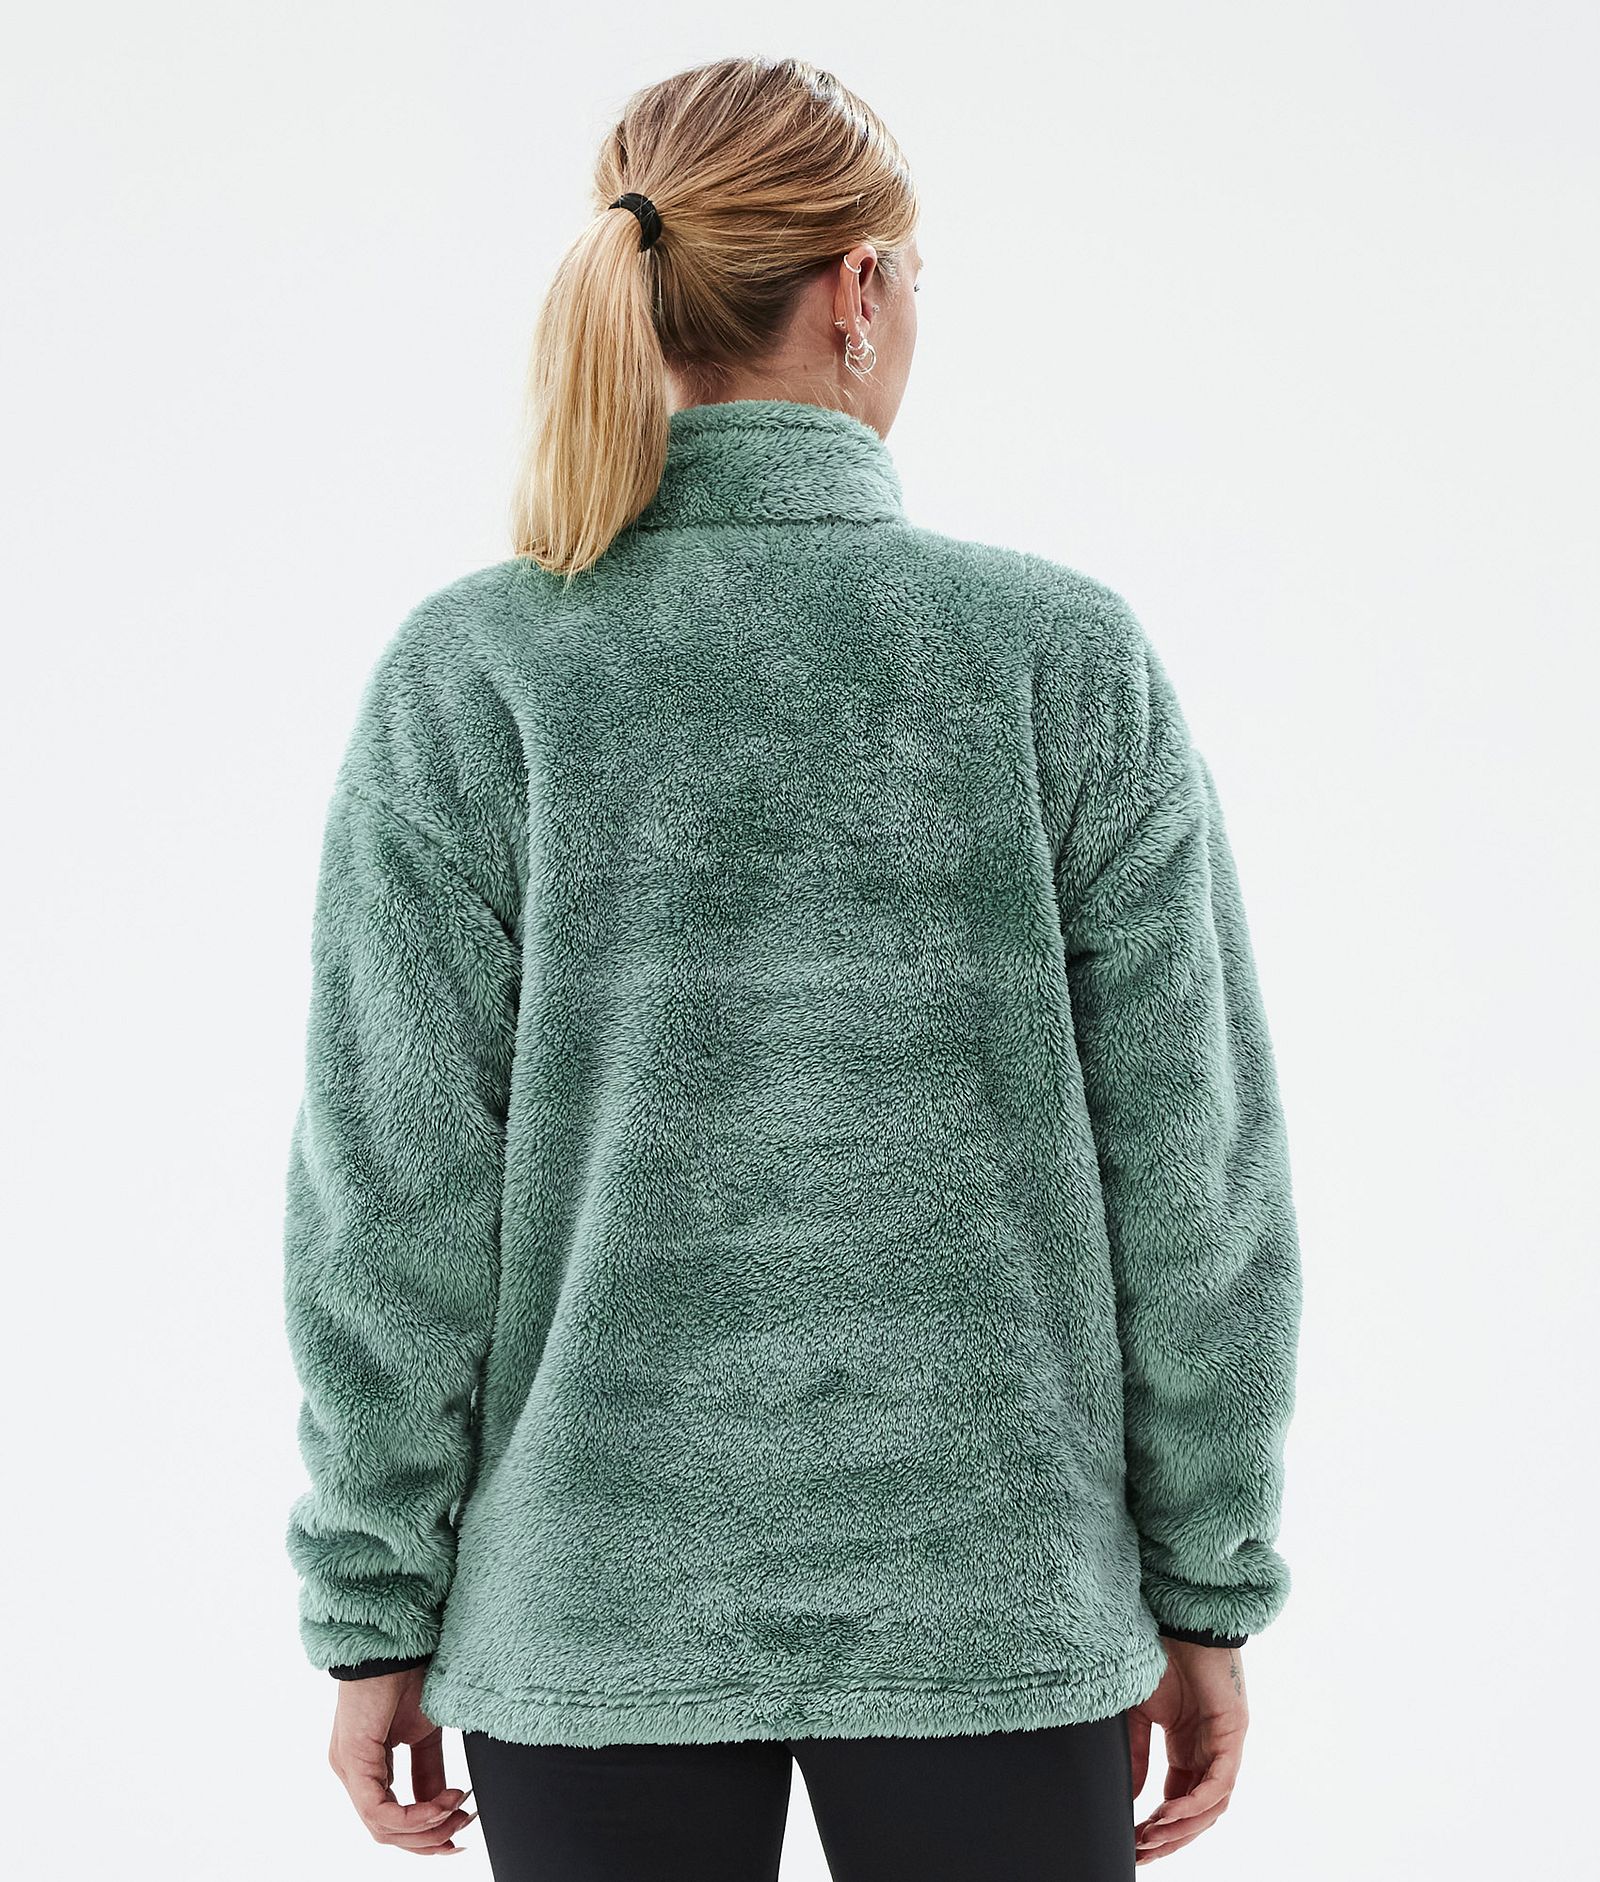 Sweat-shirt en polaire Femme - Vert